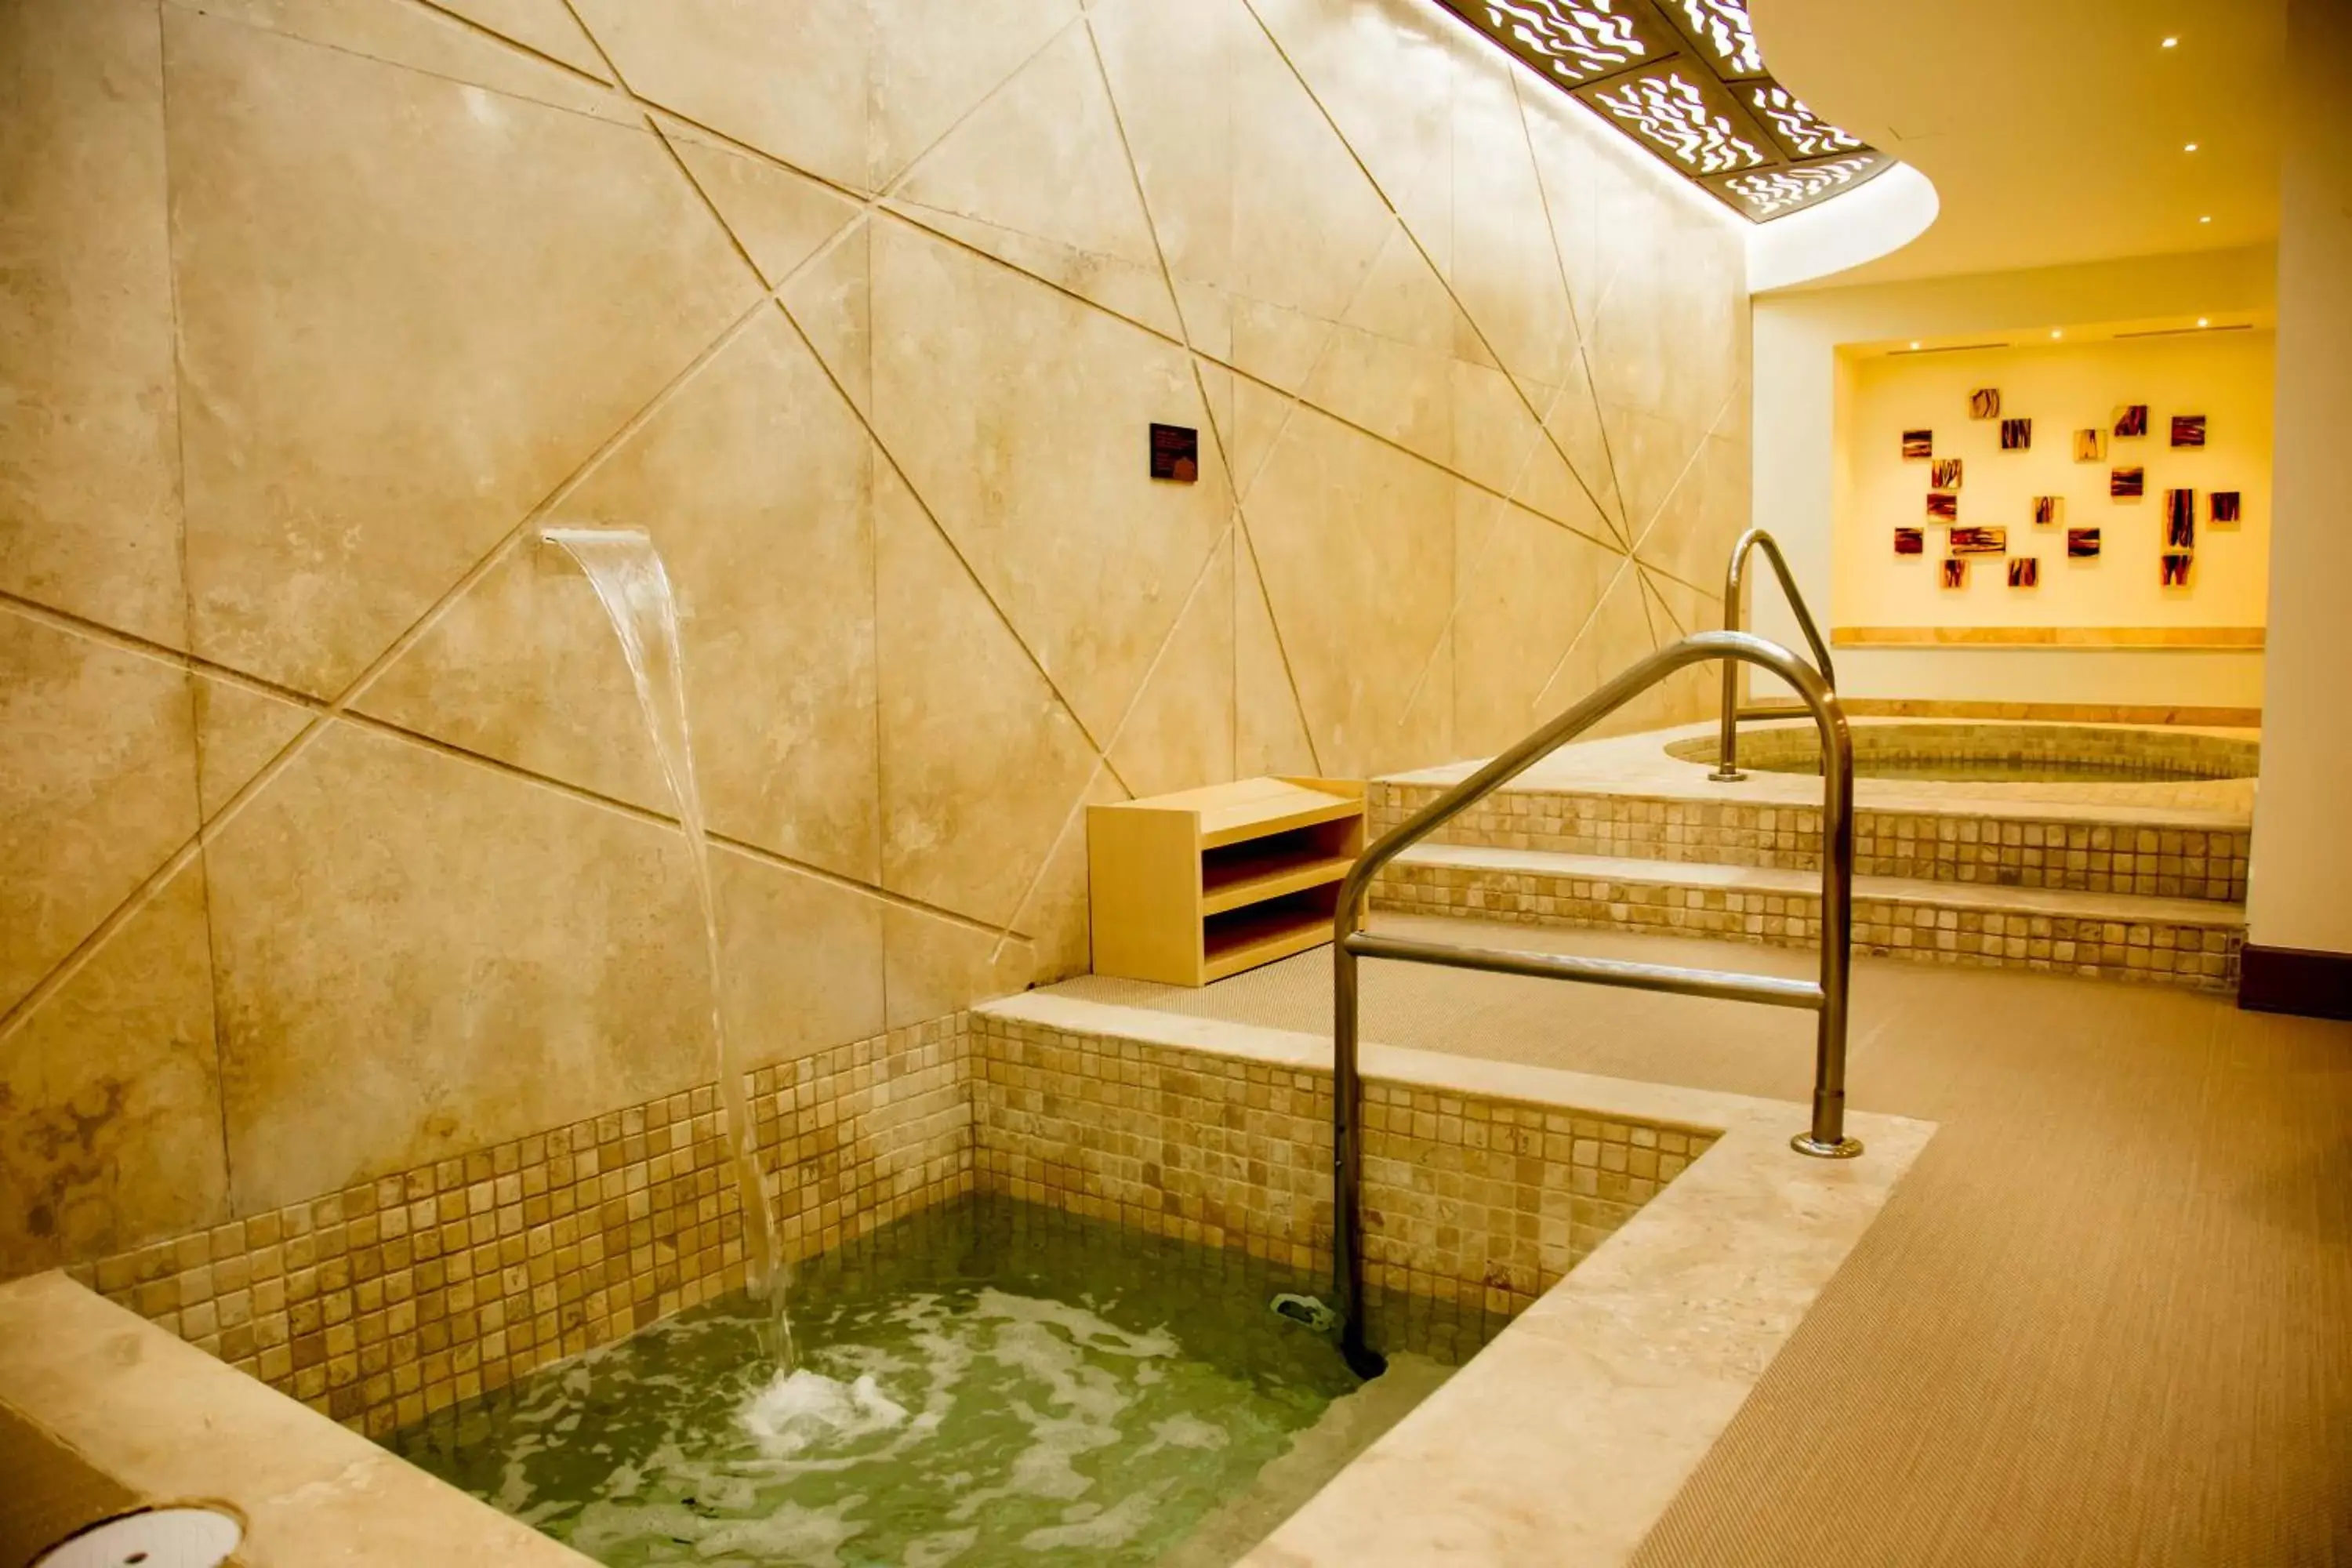 Spa and wellness centre/facilities, Bathroom in Casa Dorada Los Cabos Resort & Spa